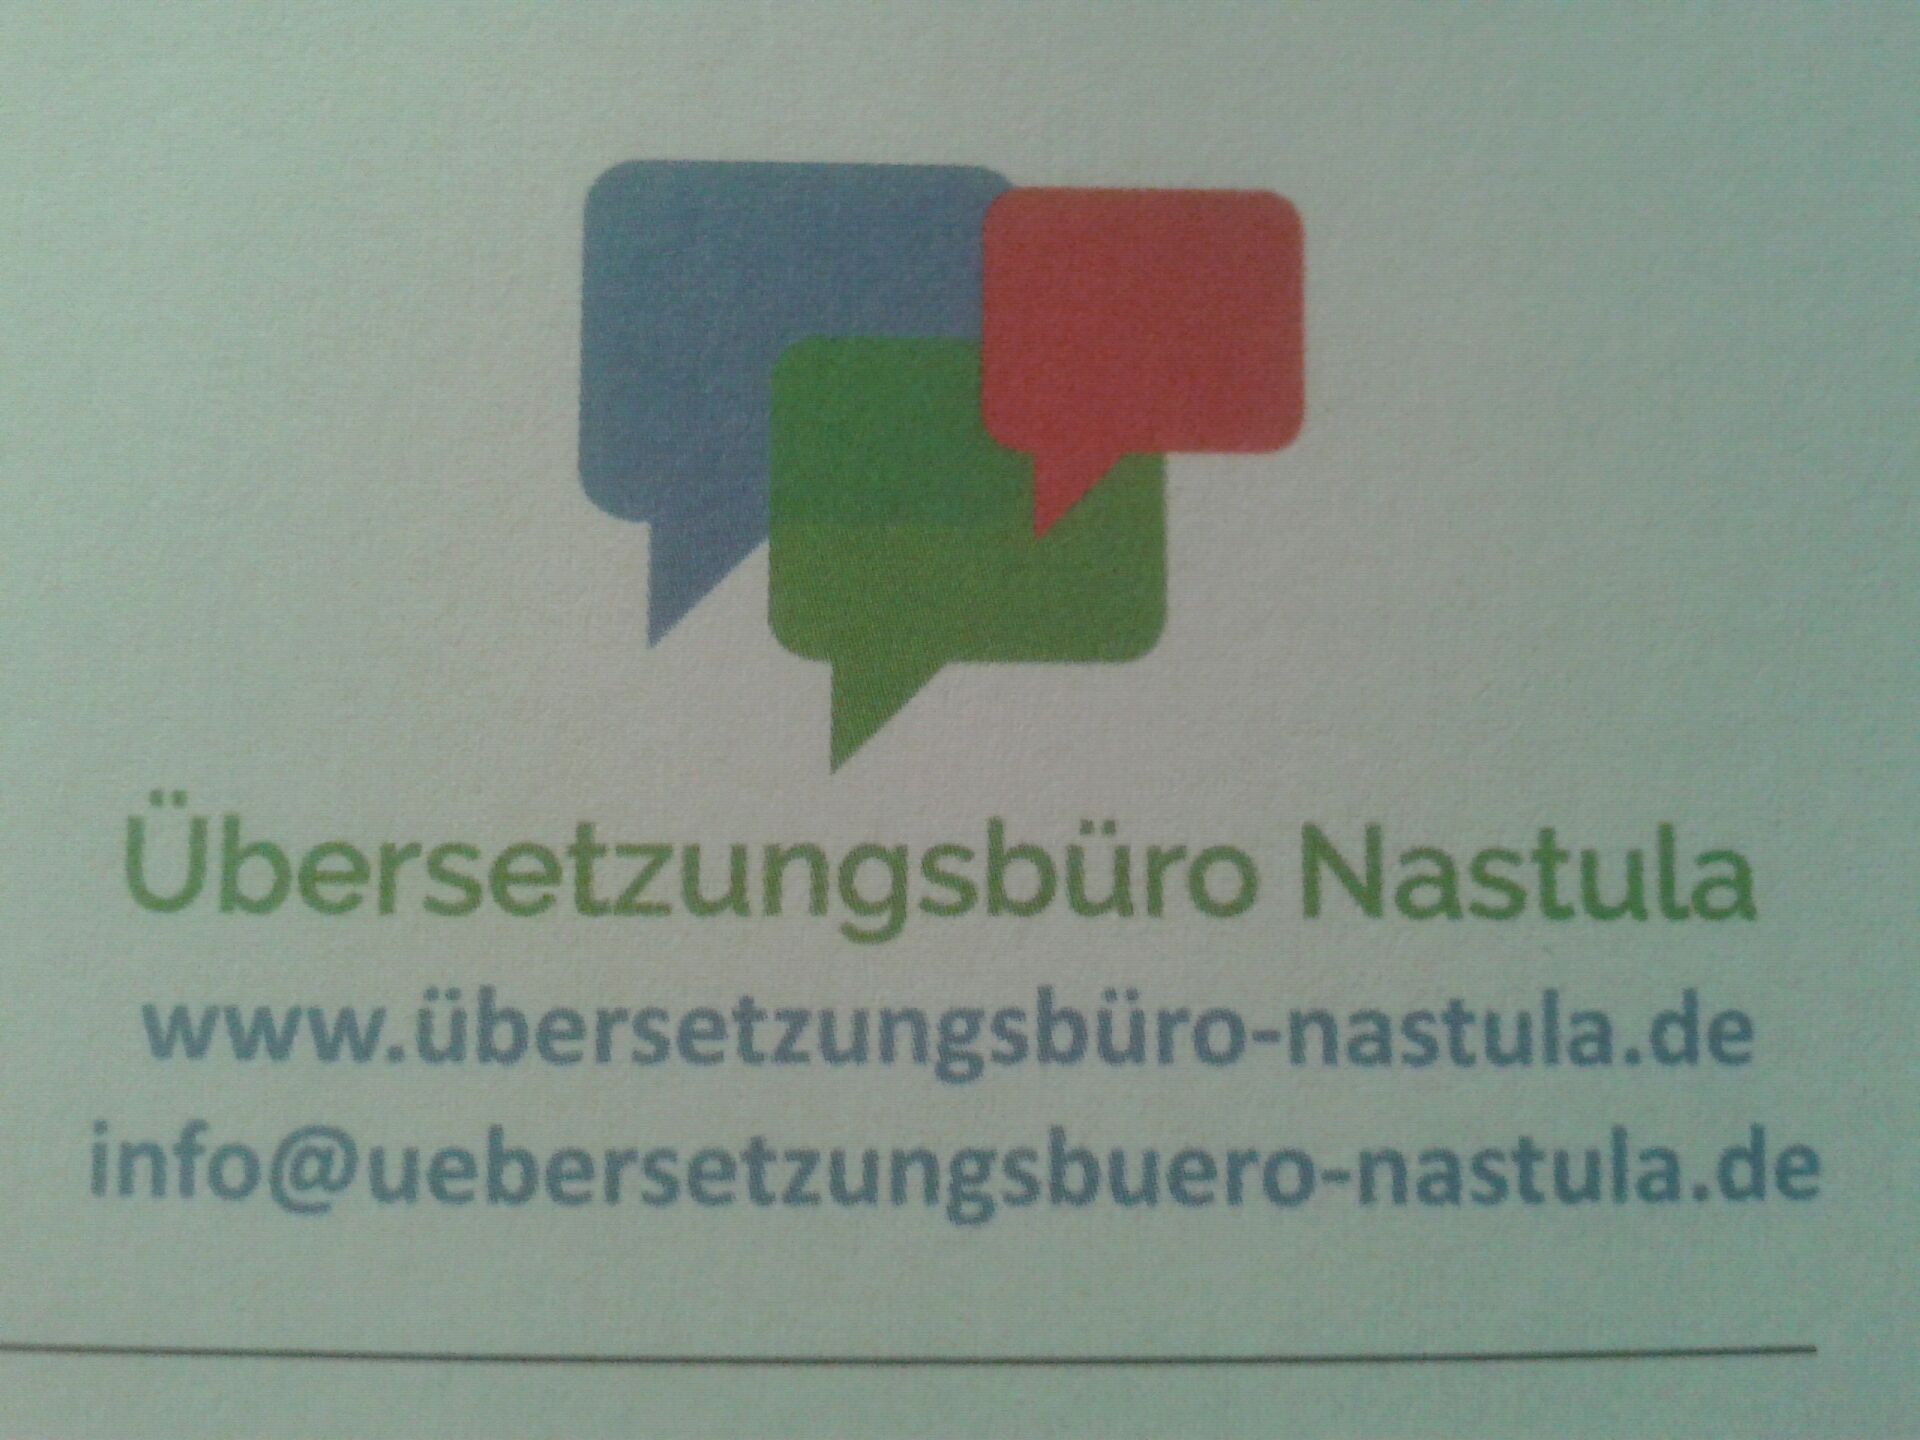 Logo vom Übersetzungsbüro Nastula in Datteln.